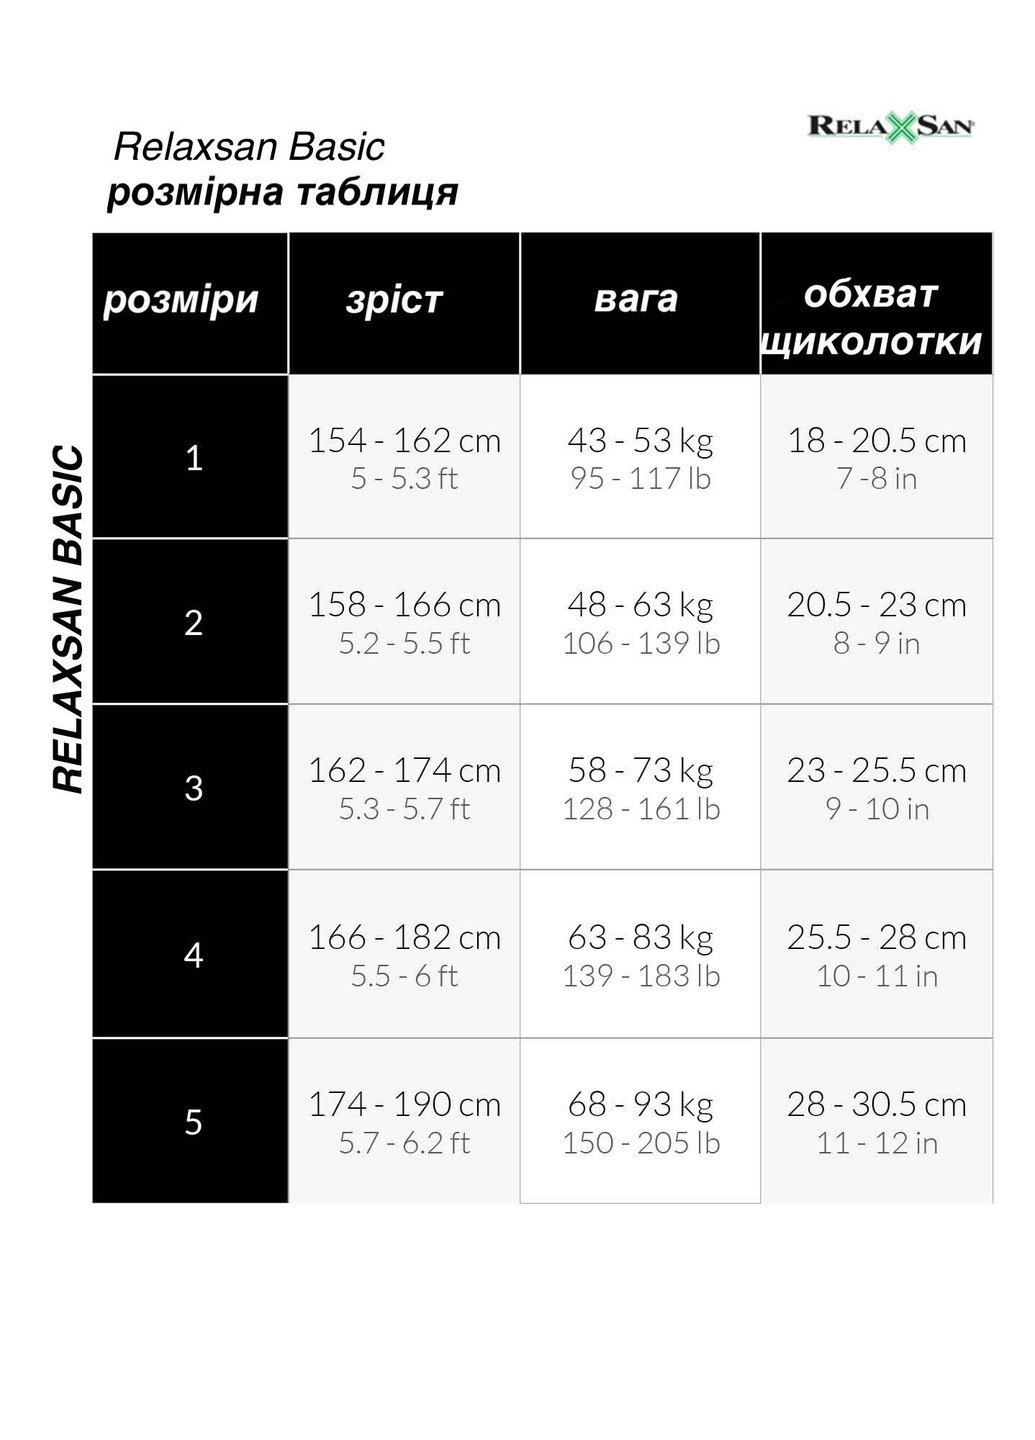 Компресійні матові панчохи MICROFIBER 1 клас18-22 мм рт.ст. Relaxsan панохи (257052186)